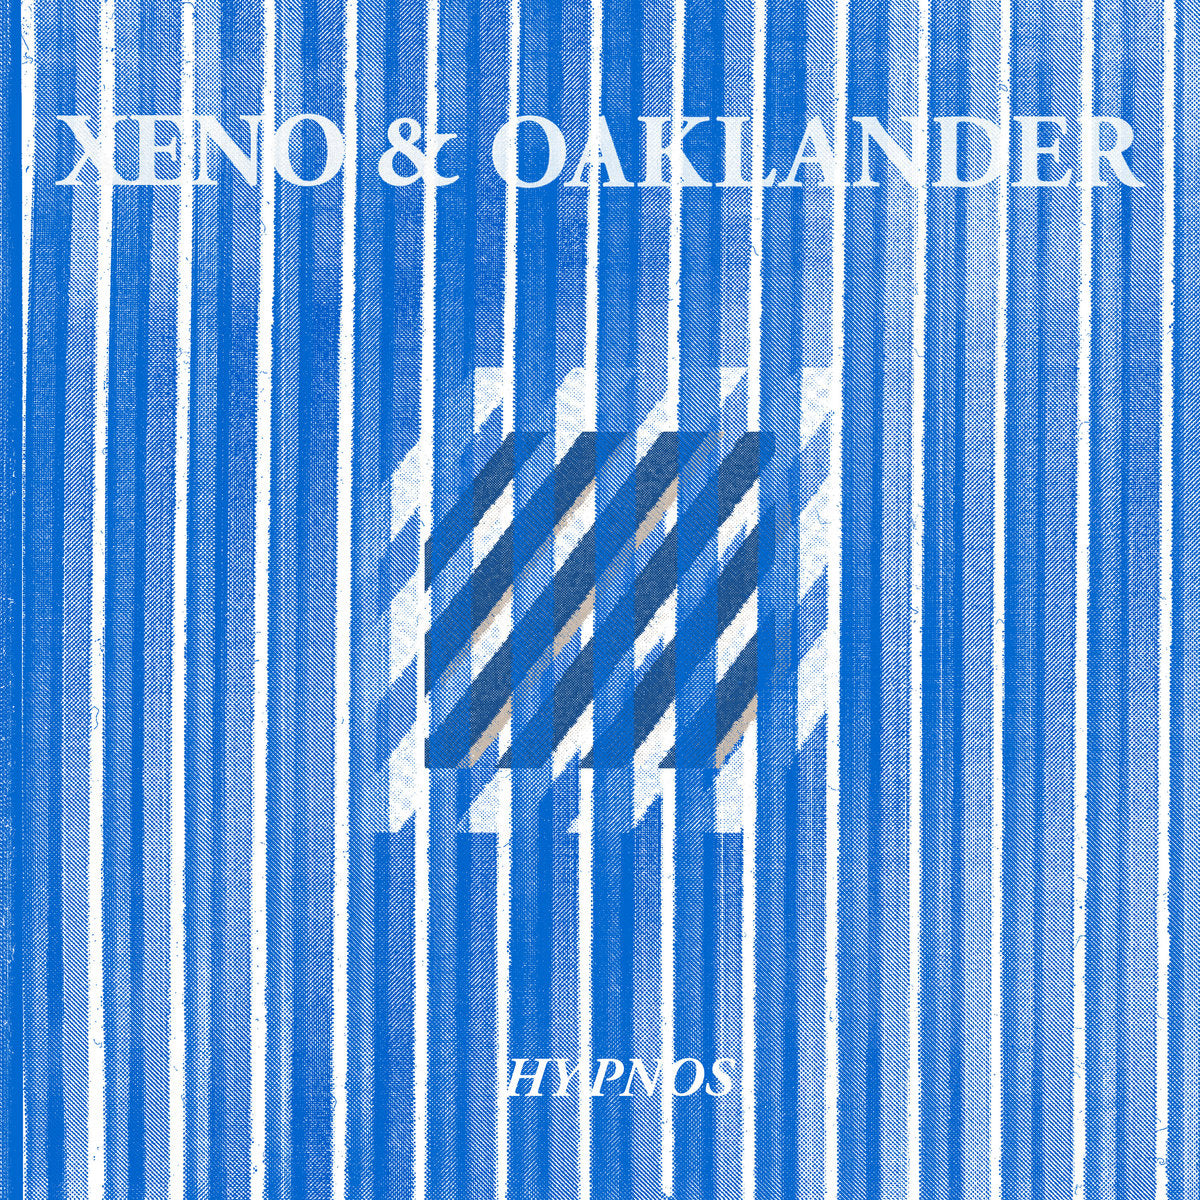 XENO & OAKLANDER - HYPNOS LP